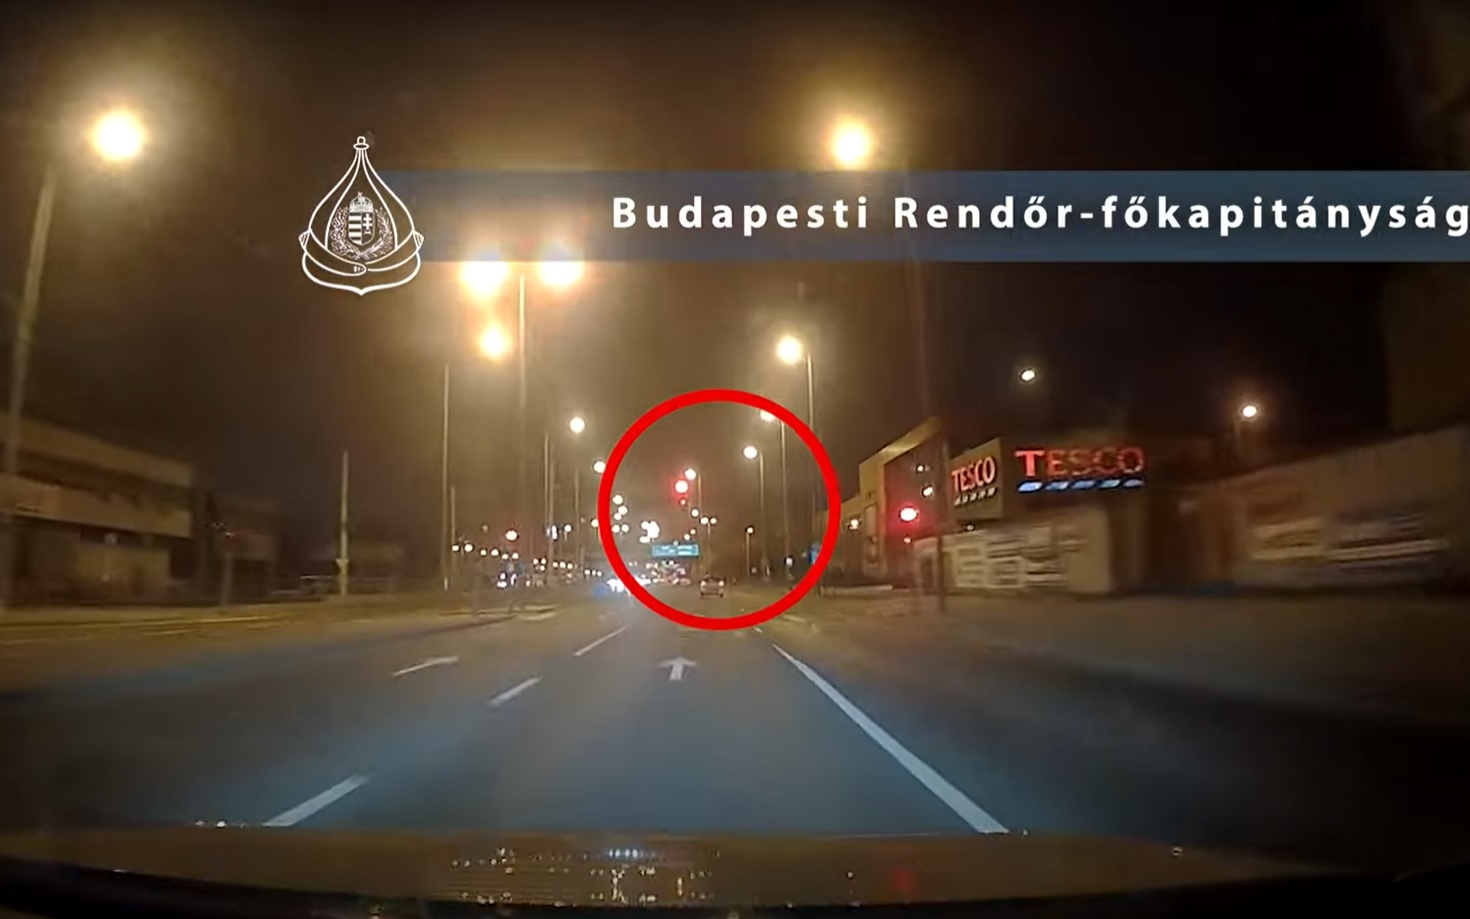 Videót tett közzé a rendőrség a budapesti autós üldözésről